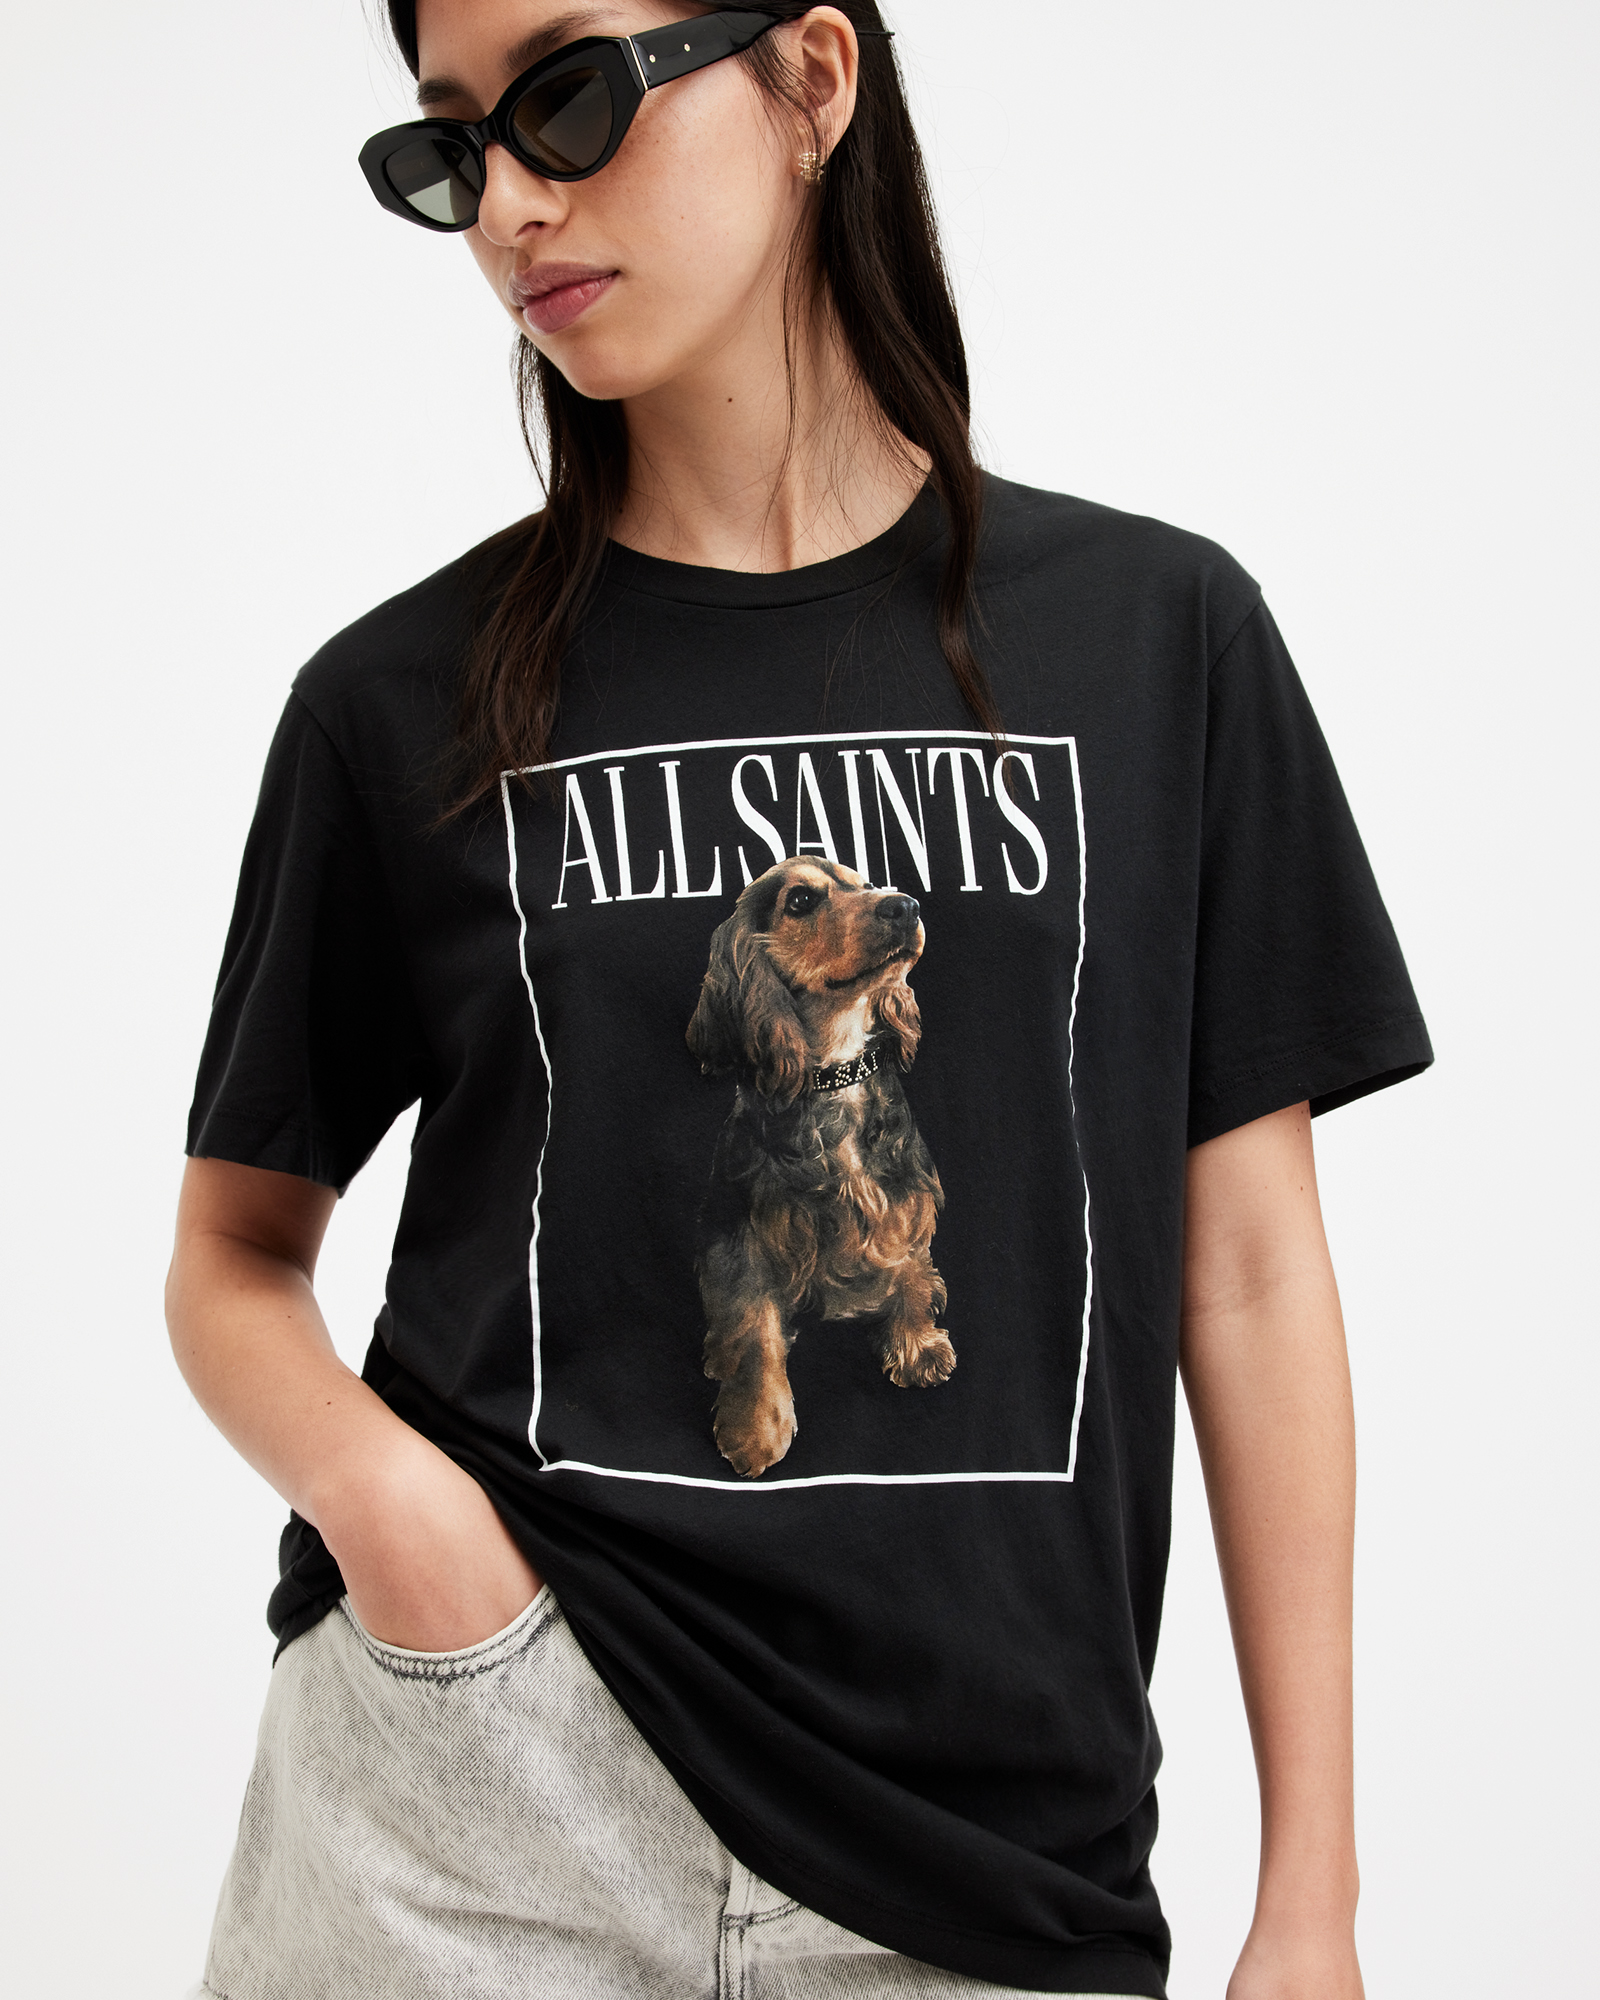 AllSaints Pepper Dog Artwork Oversized T-Shirt,, Black